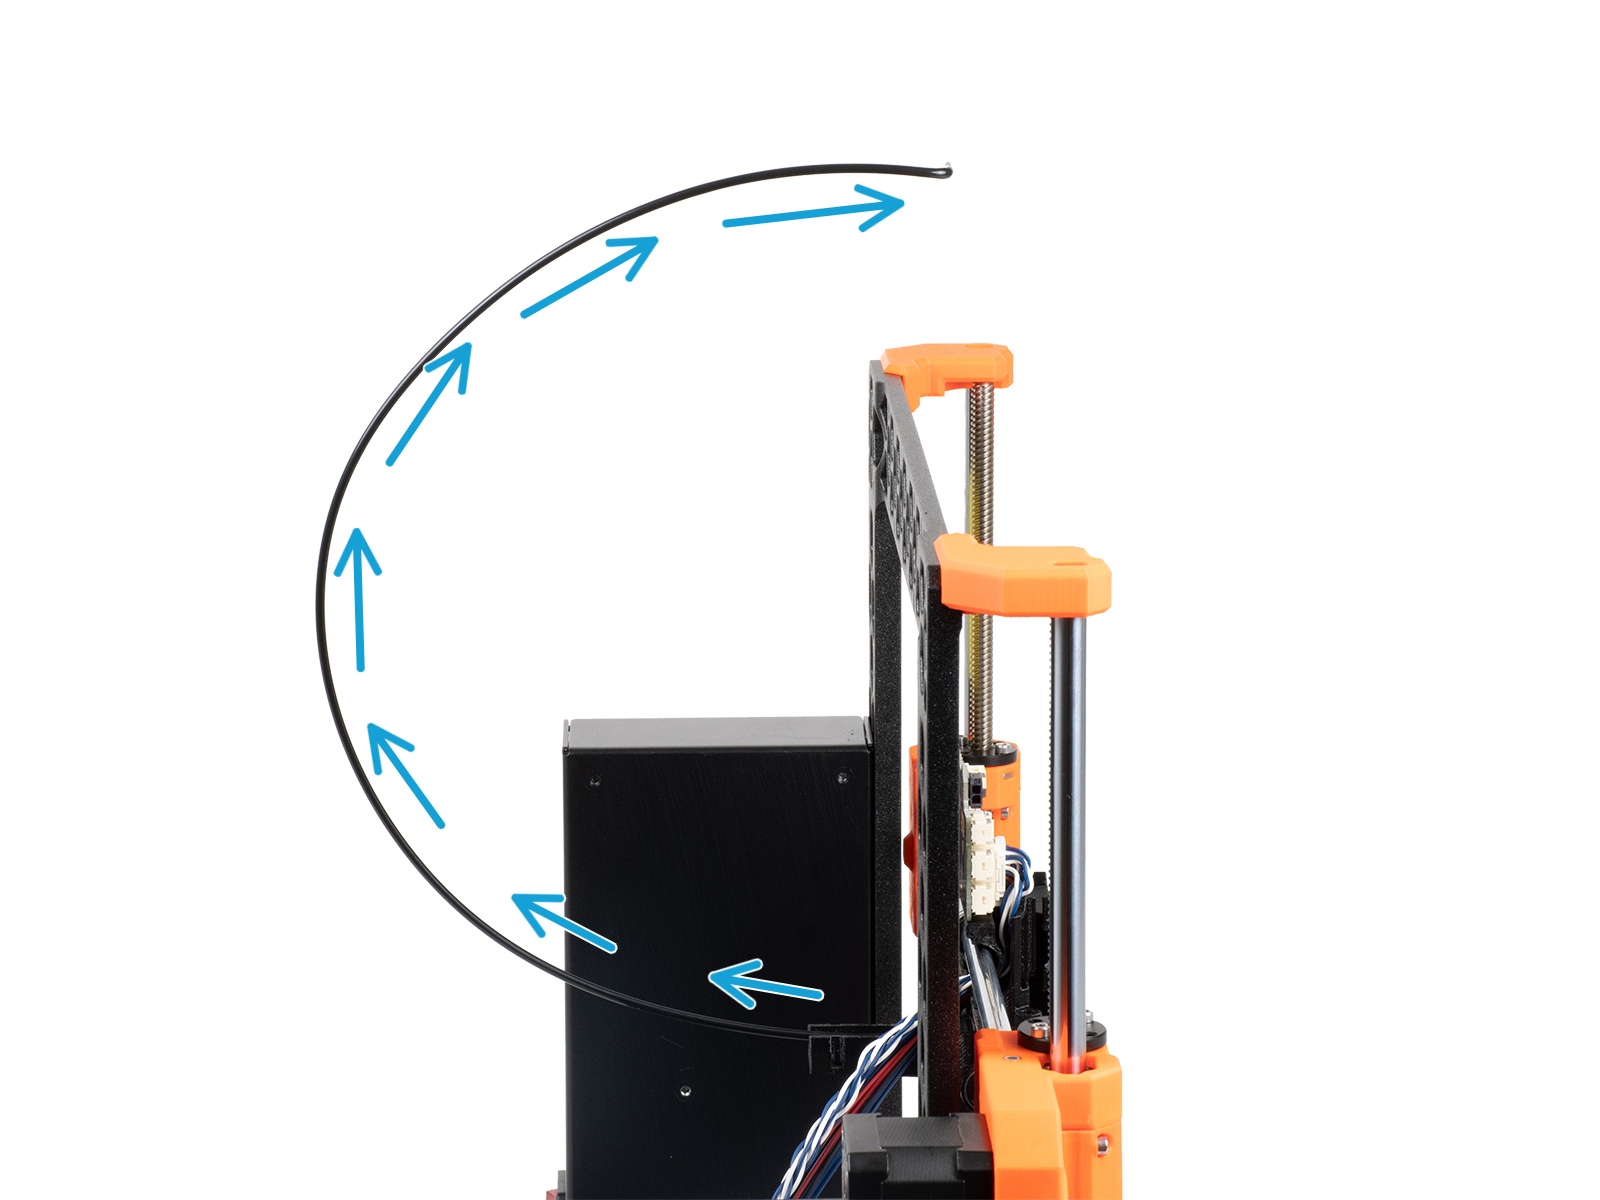 Montaż tylnej pokrywy wózka osi X: montaż filamentu nylonowego